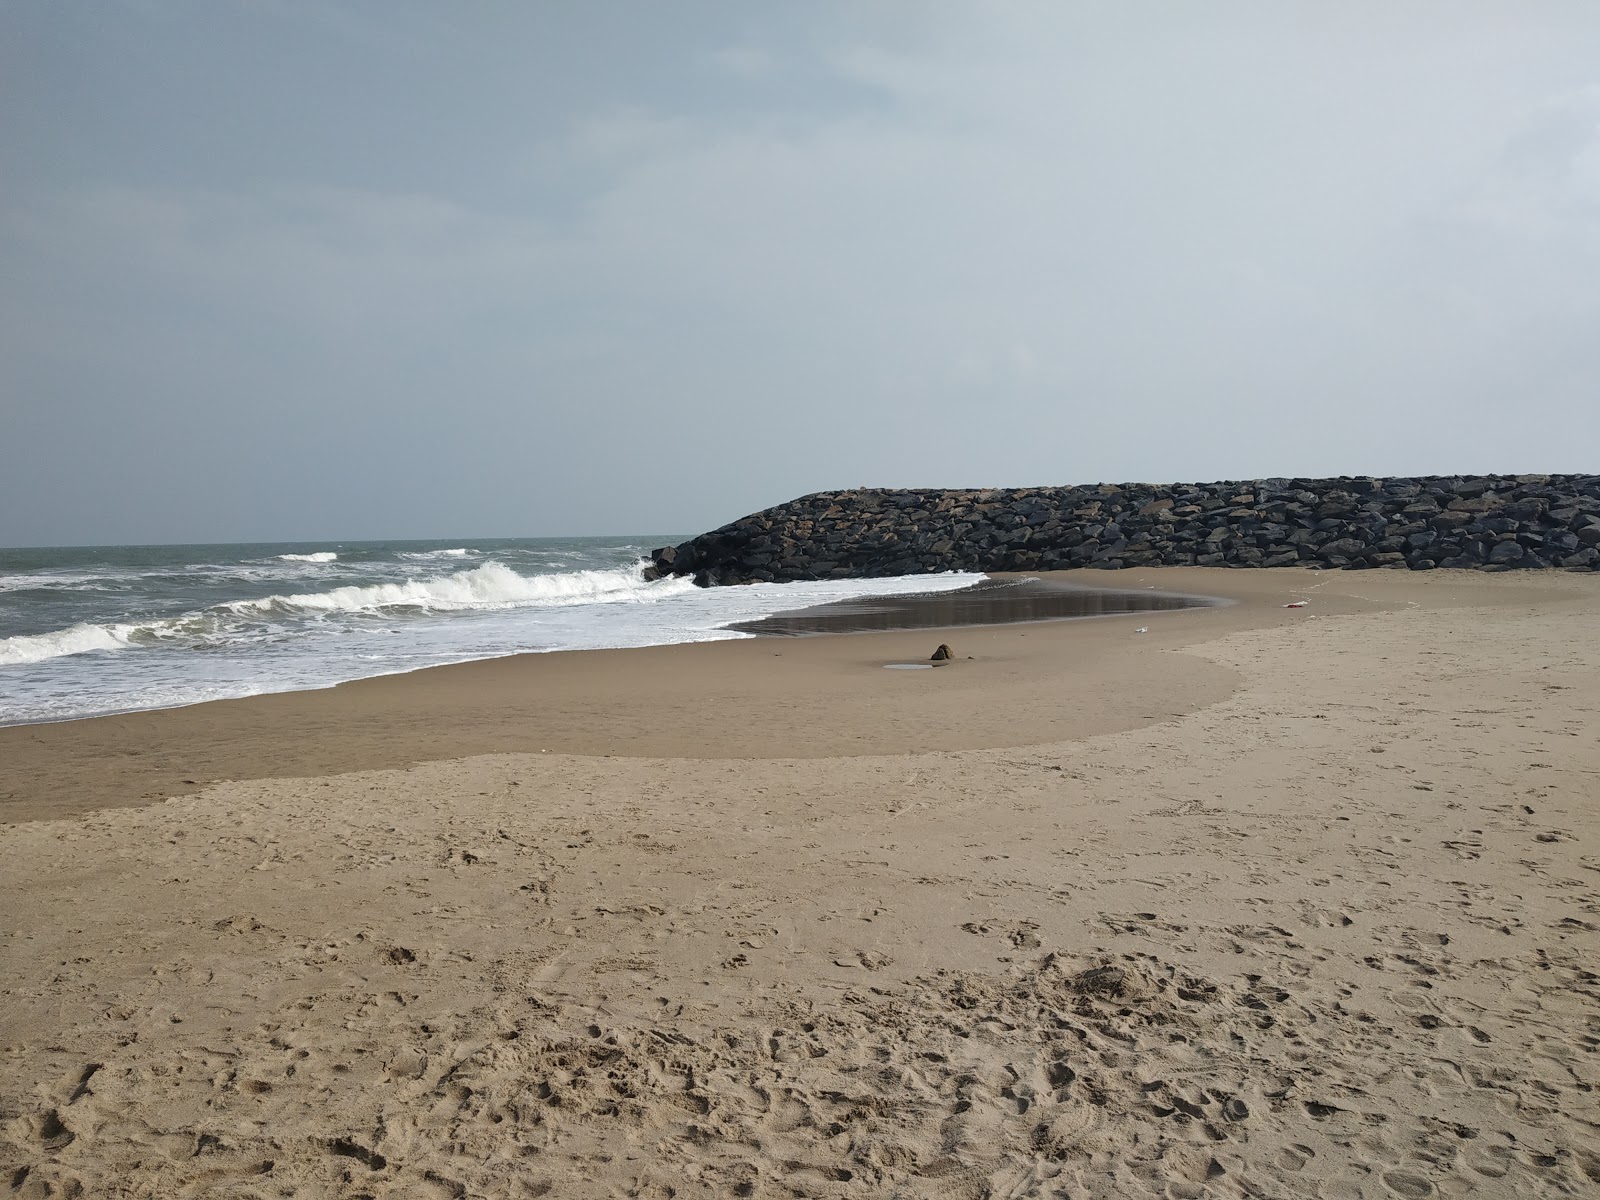 Foto de Poompuhar Beach y el asentamiento